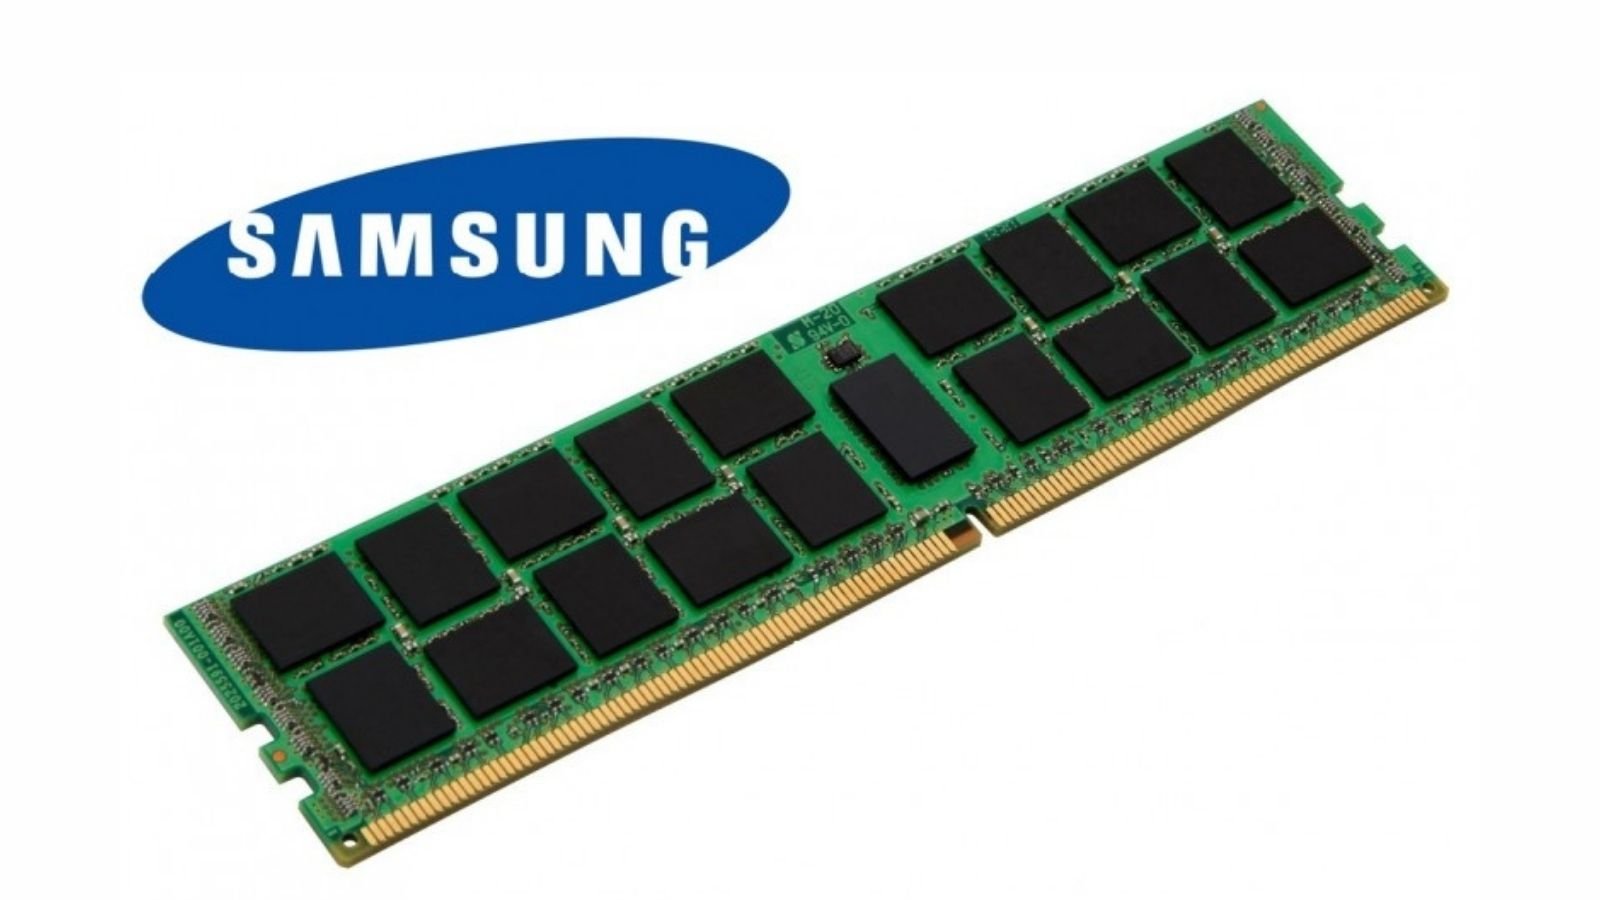 TheElec tarafından söylenene göre Samsung, DRAM  (rastgele erişim belleğine) MUF (kalıplanmış dolgu) teknolojisini dahil etmeyi düşündüklerini ifade etti.